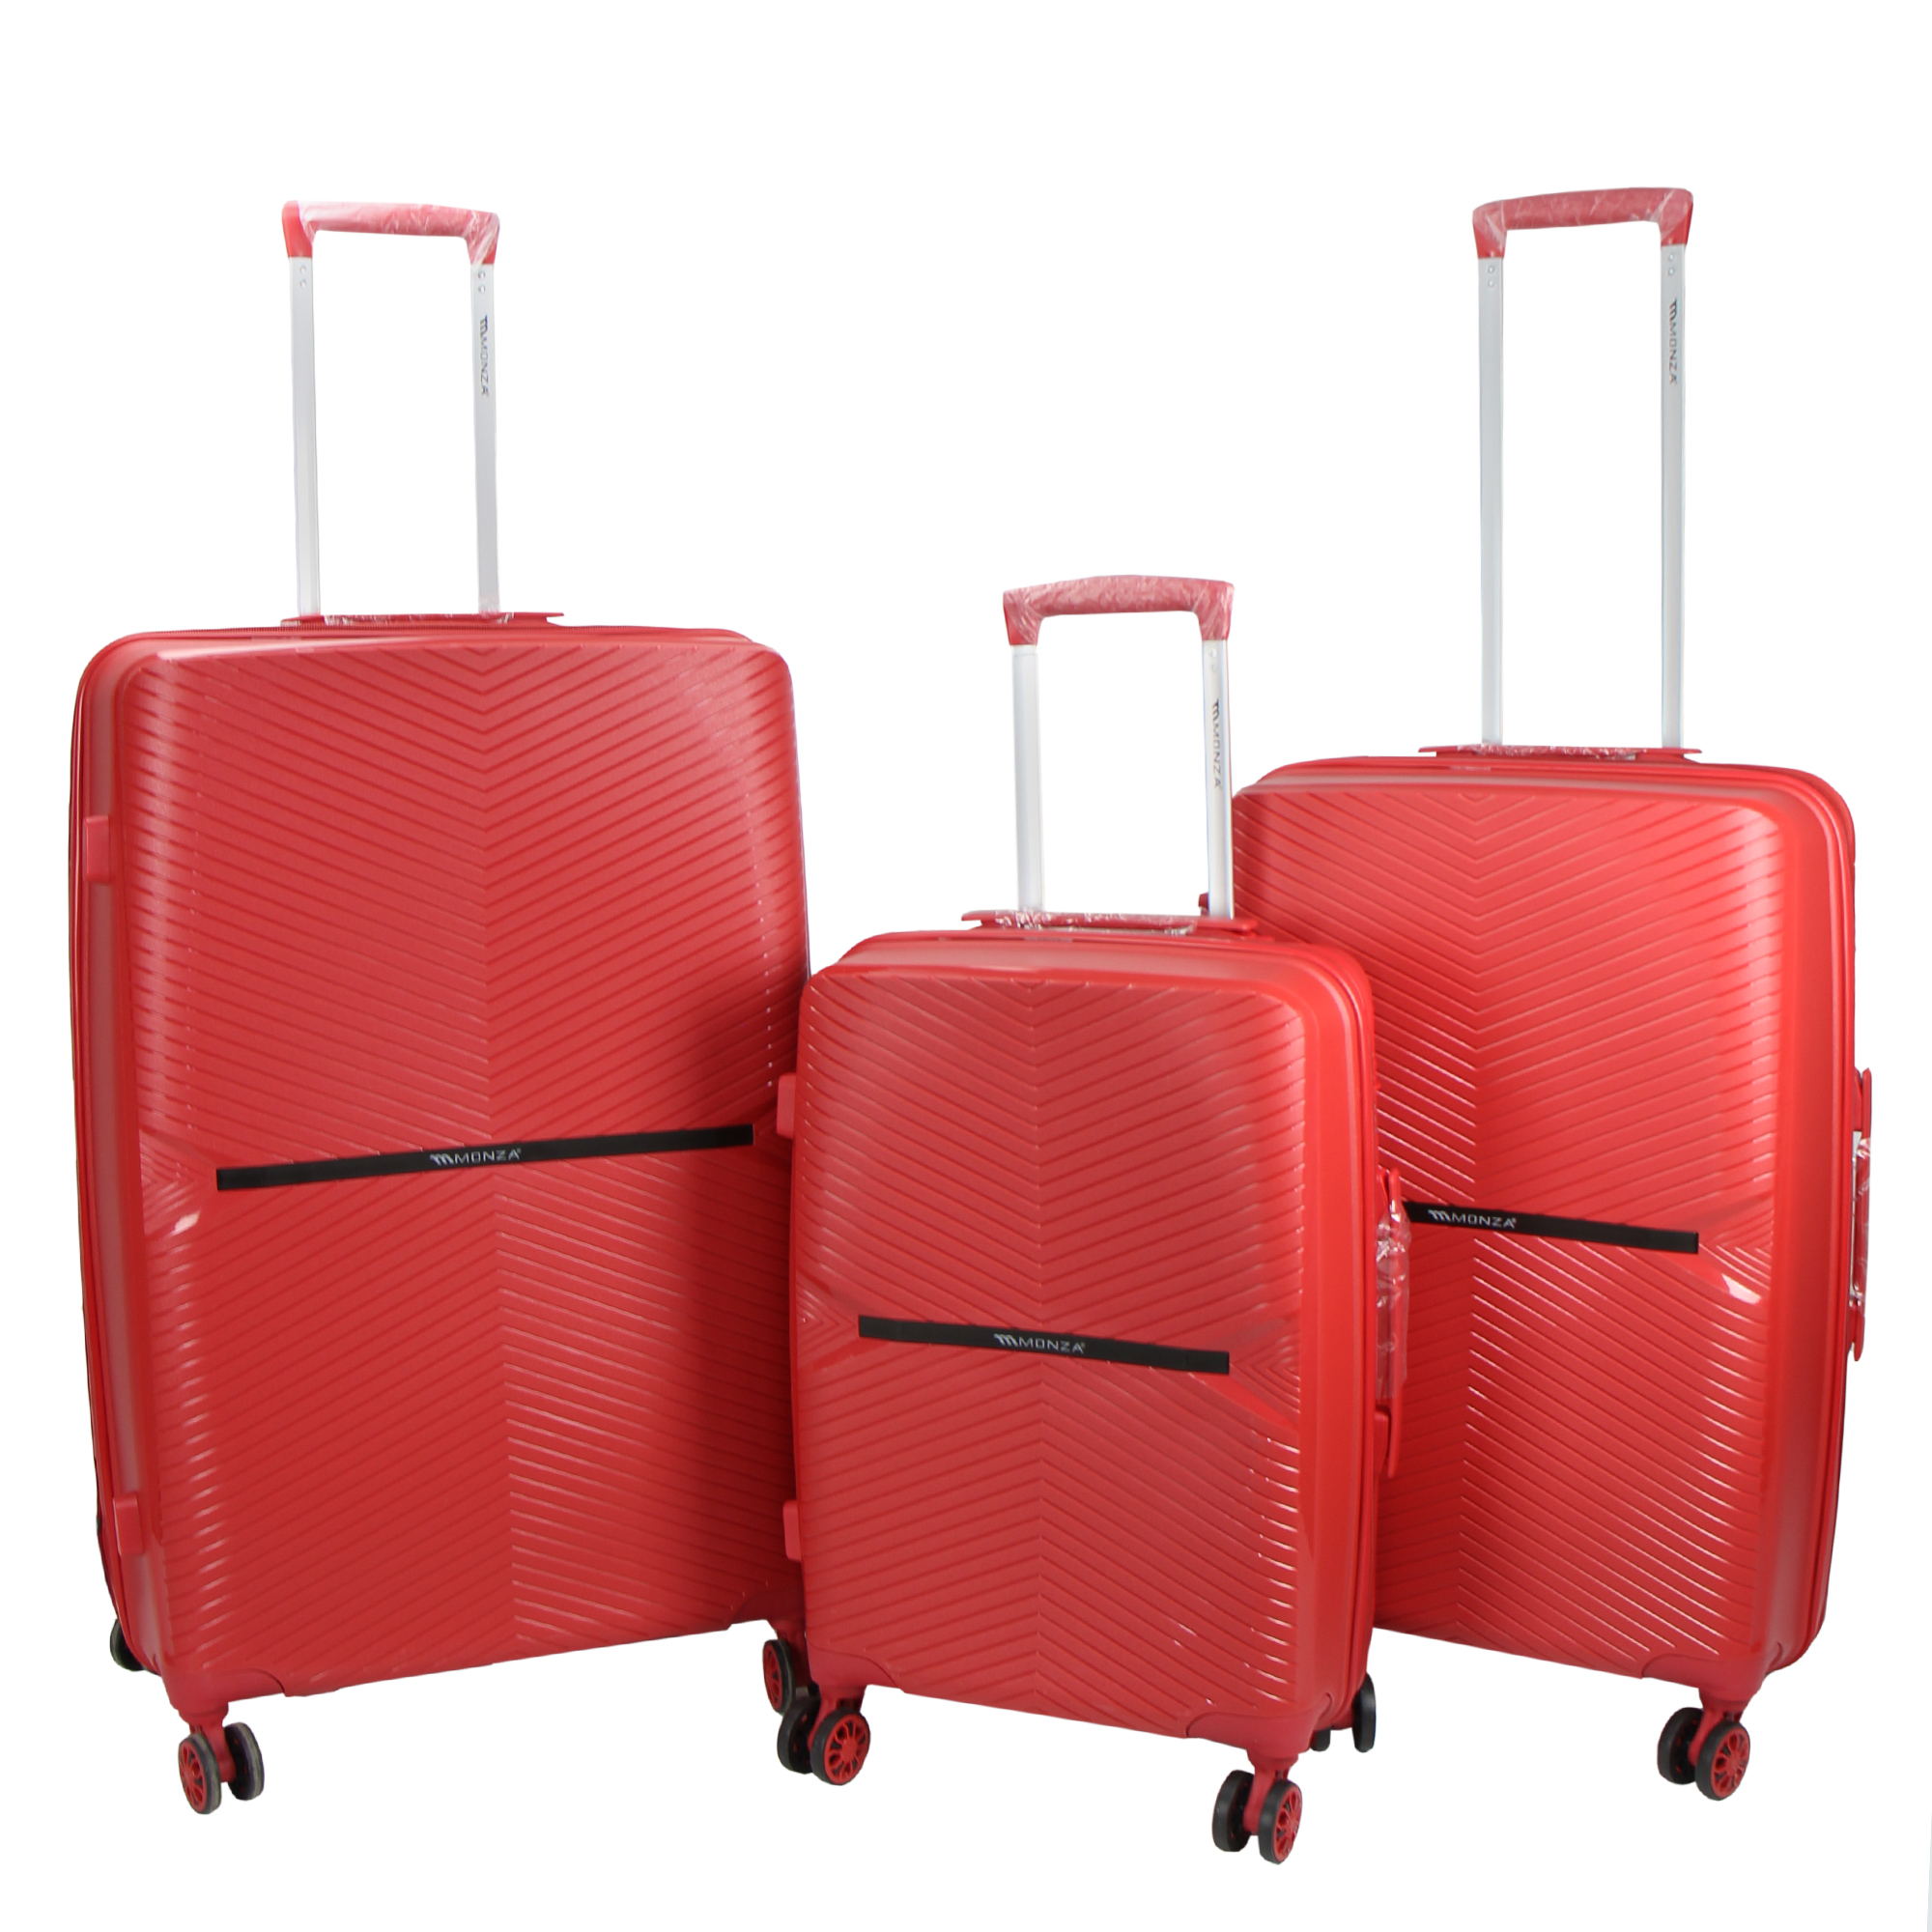 نکته خرید - قیمت روز چمدان مونزا مدل C0543 مجموعه سه عددی خرید